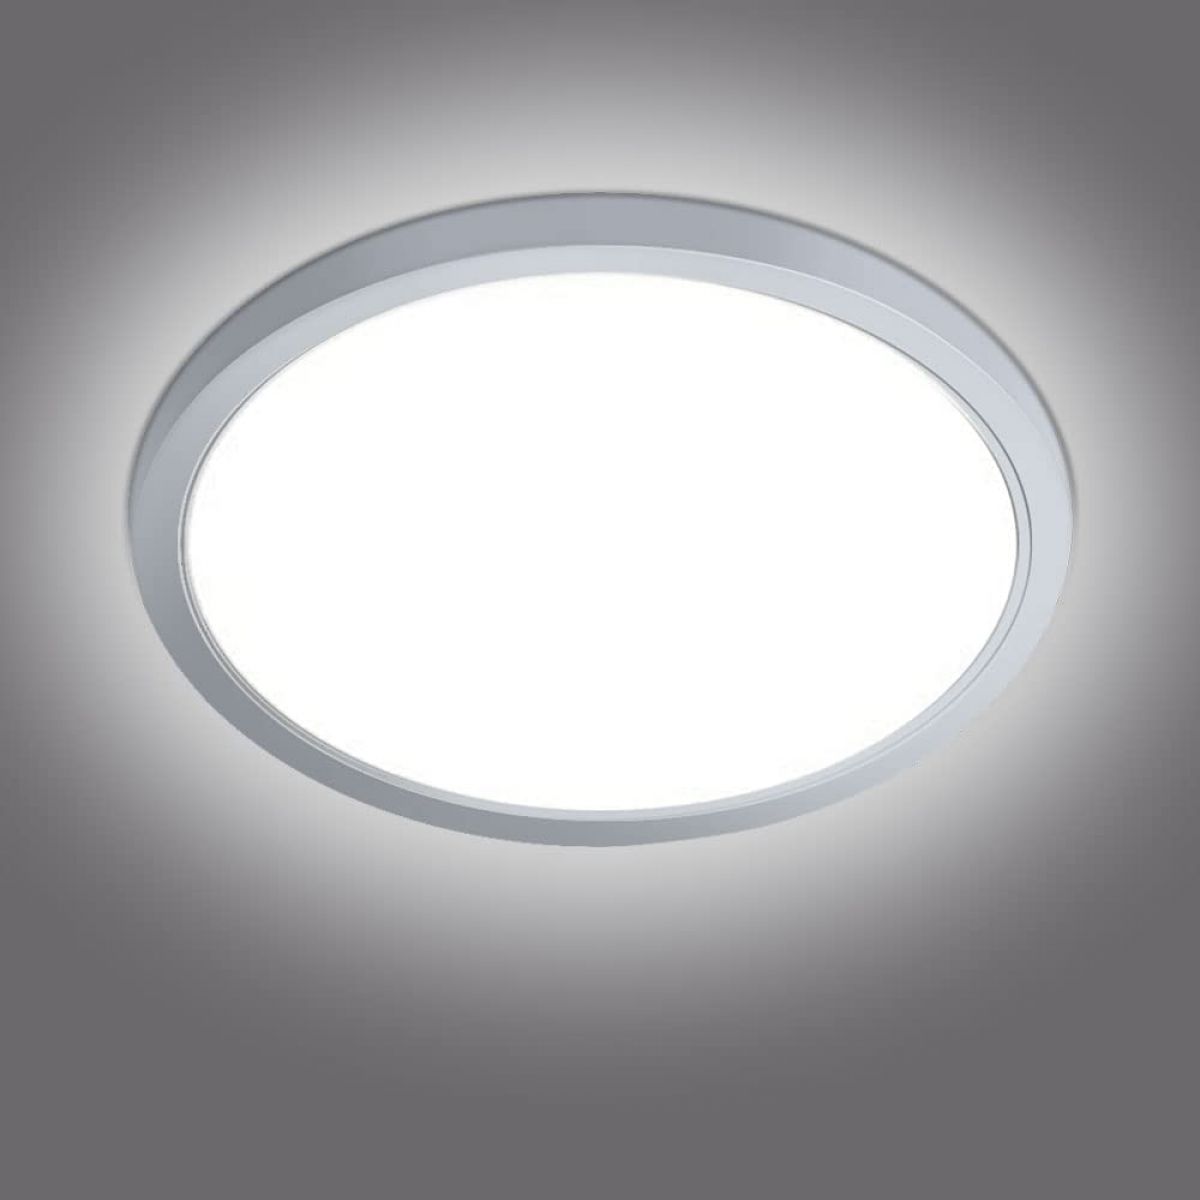 Ceiling lamp (300×24 mm), 36 W, LED, IP44